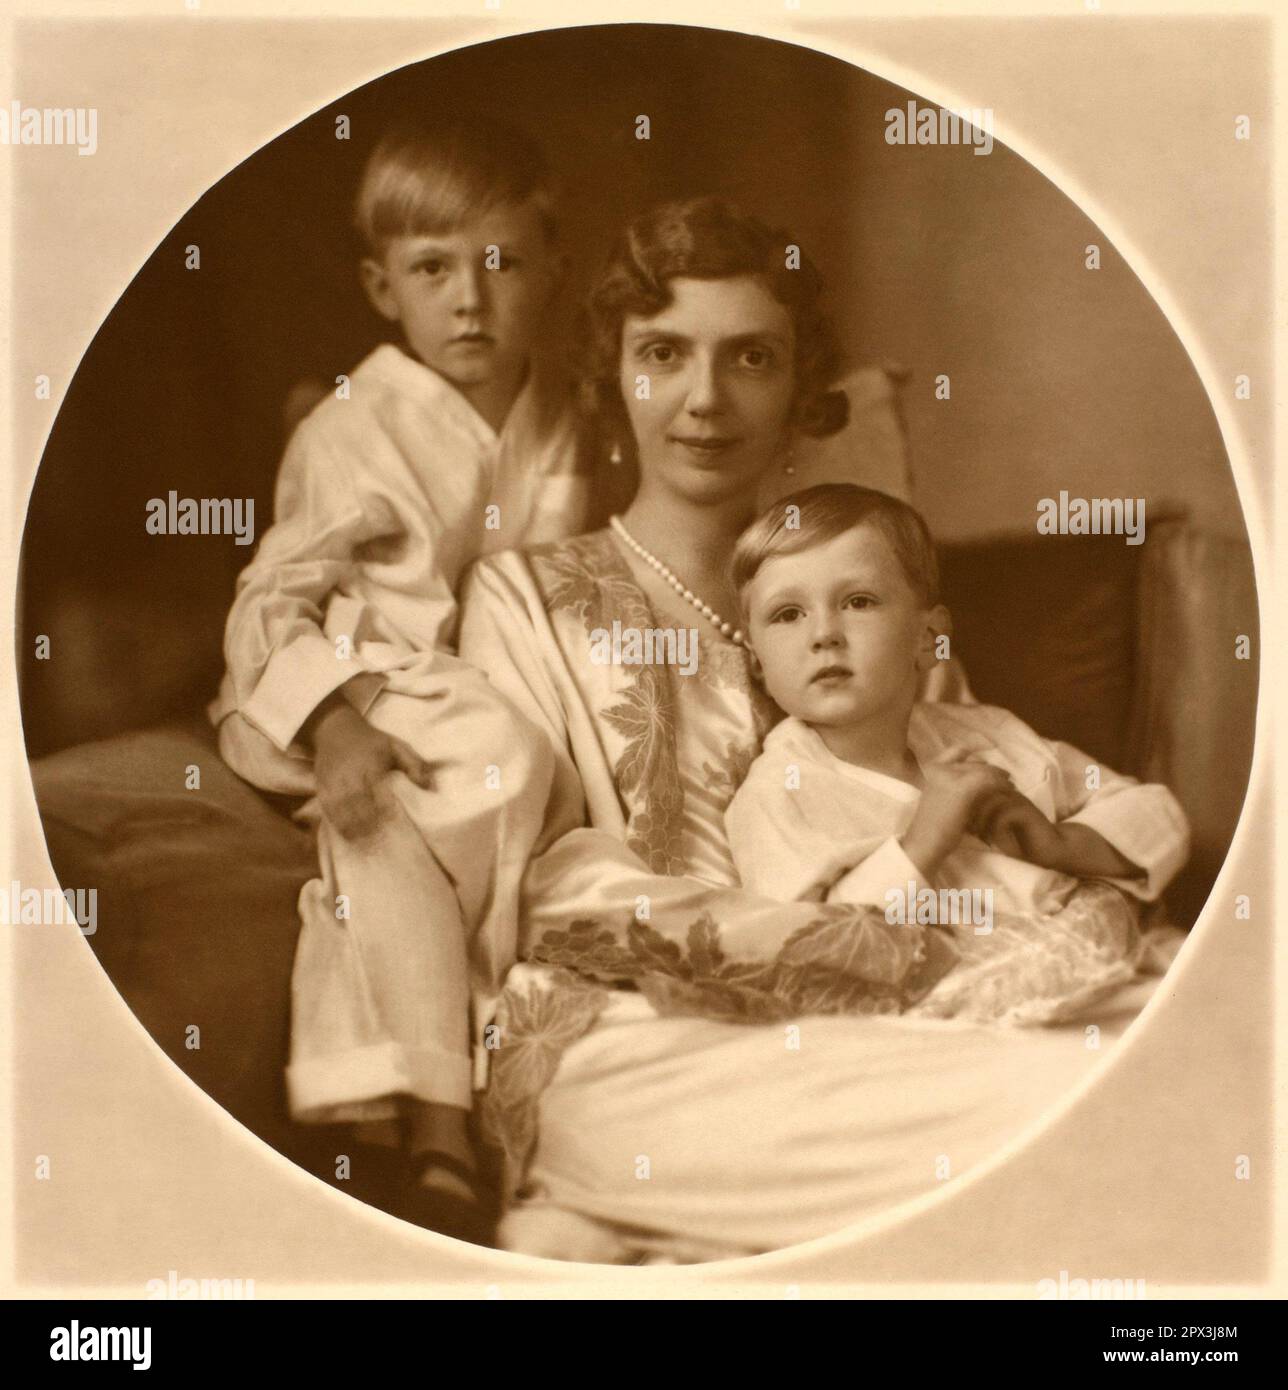 1932 c., Roma , ITALIA : la principessa ITALIANA MAFALDA di SAVOIA ( 1902 - 1944 ), sposata con il principe tedesco Filippo d'Assia Kassel ( Philipp d'ASSIA ), in questa foto con figli : MORITZ ( Maurizio , 1926 - 2013 ) e HENRICH ( Enrico , 1927 - 1999 ). Mafalda era figlia del Re d'Italia VITTORIO EMANUELE III e della Regina ELENA ( Helene del Montenegro ). Foto di EVA BARRETT ( 1879 - 1950 ). - SAVOY - principessa - ITALIA - personalità celebrità da BAMBINI - da piccolo da piccoli piccola - bambino - BAMBINO - INFANZIA - INFANZIA - PERSONALITÀ CELEBRITÀ - personalità celebrità quando era chi Foto Stock